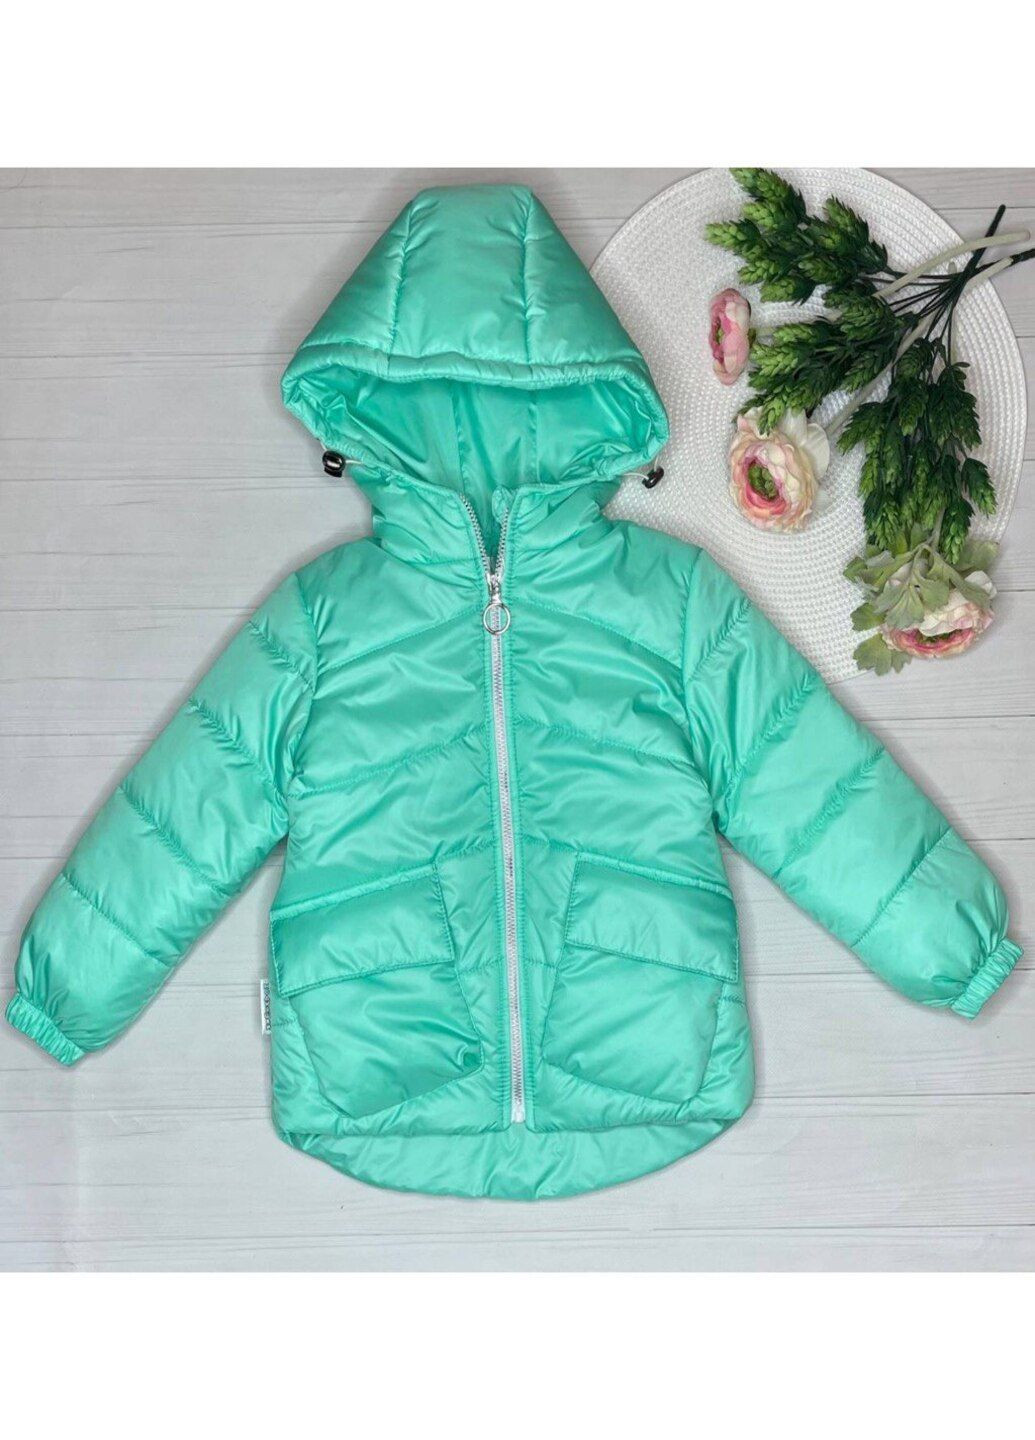 Мятная демисезонная куртка для девочки Модняшки